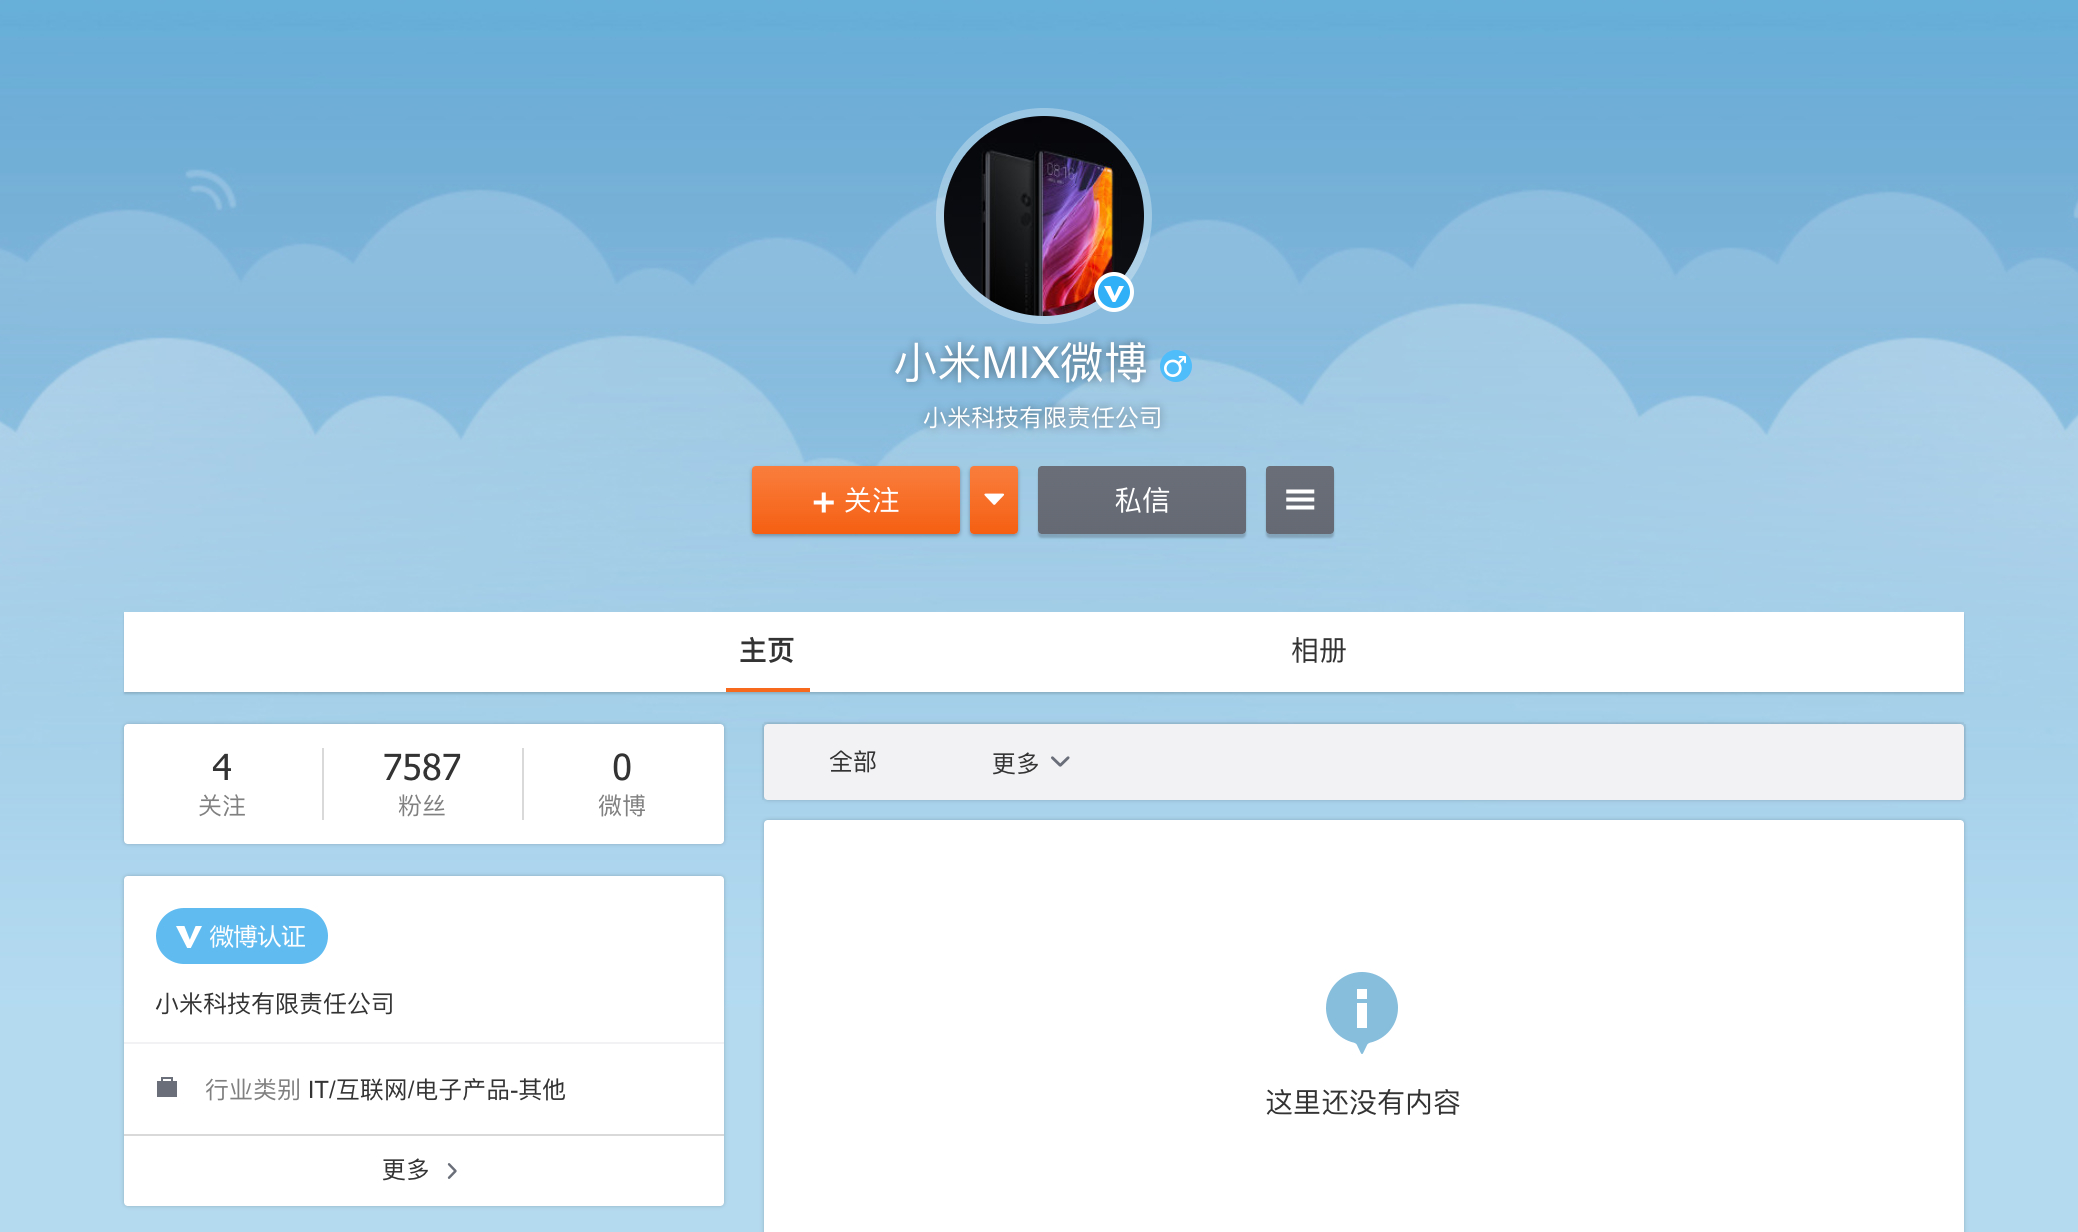 Xiaomi lập tài khoản Weibo mới cho dòng máy Mi Mix, có thể Mi Mix 4 sắp được ra mắt